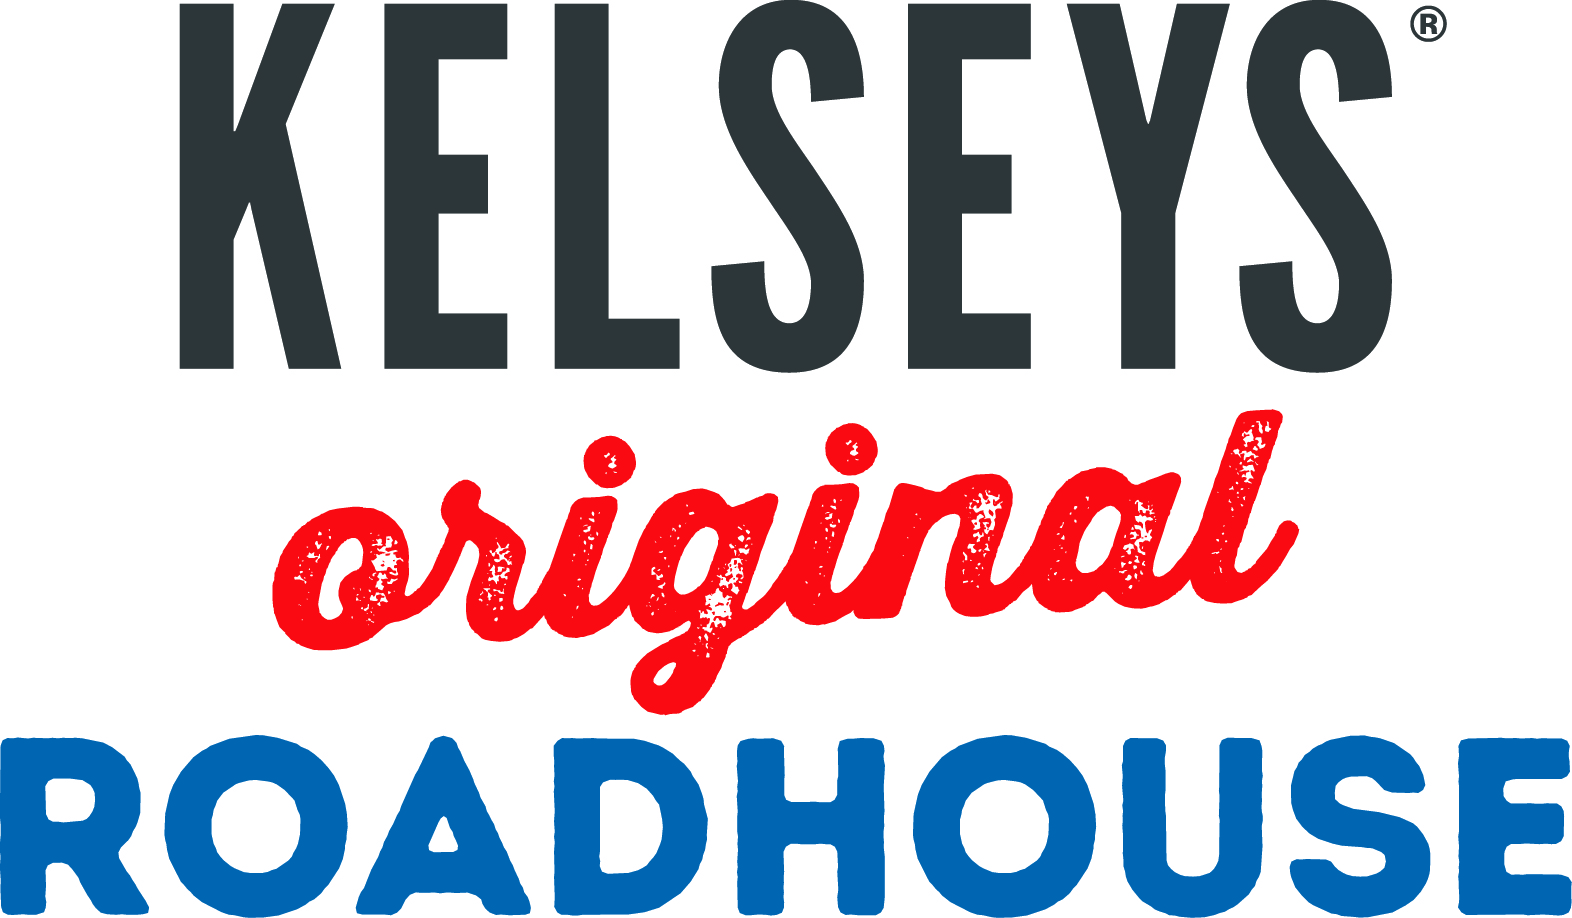 Kelseys Roadhouse